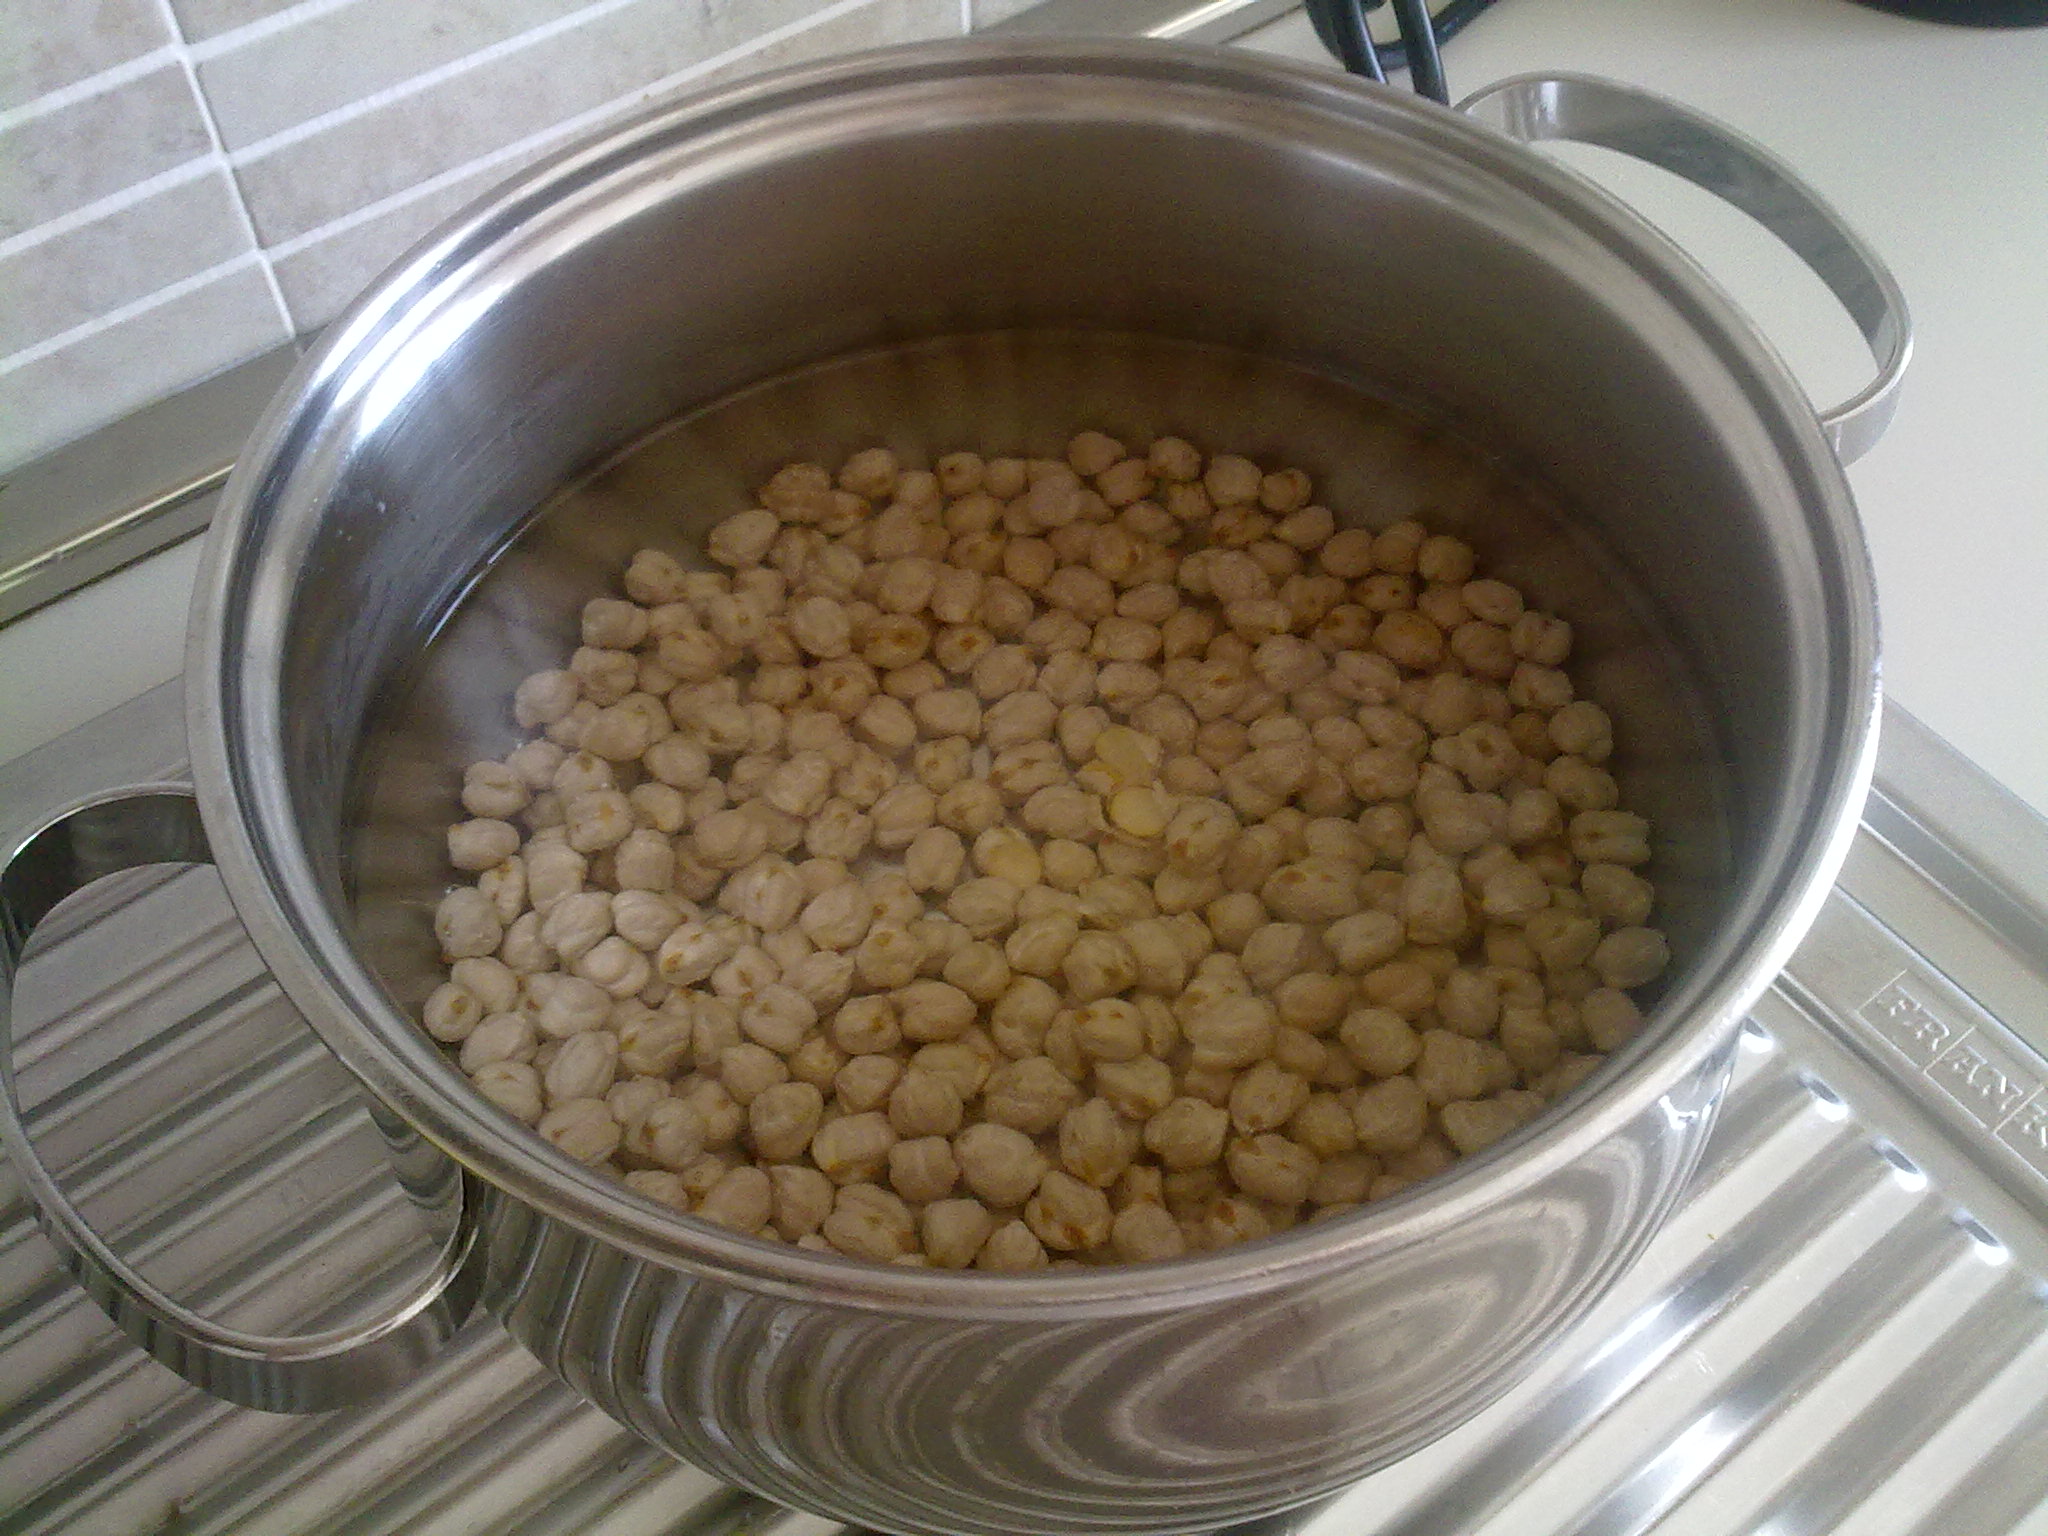 Step 1: La ricetta dei cicci maritati cilentani inizia con il mettere a mollo in acqua tiepida, in ciotole diverse, i vari legumi e cereali almeno per 12 ore.